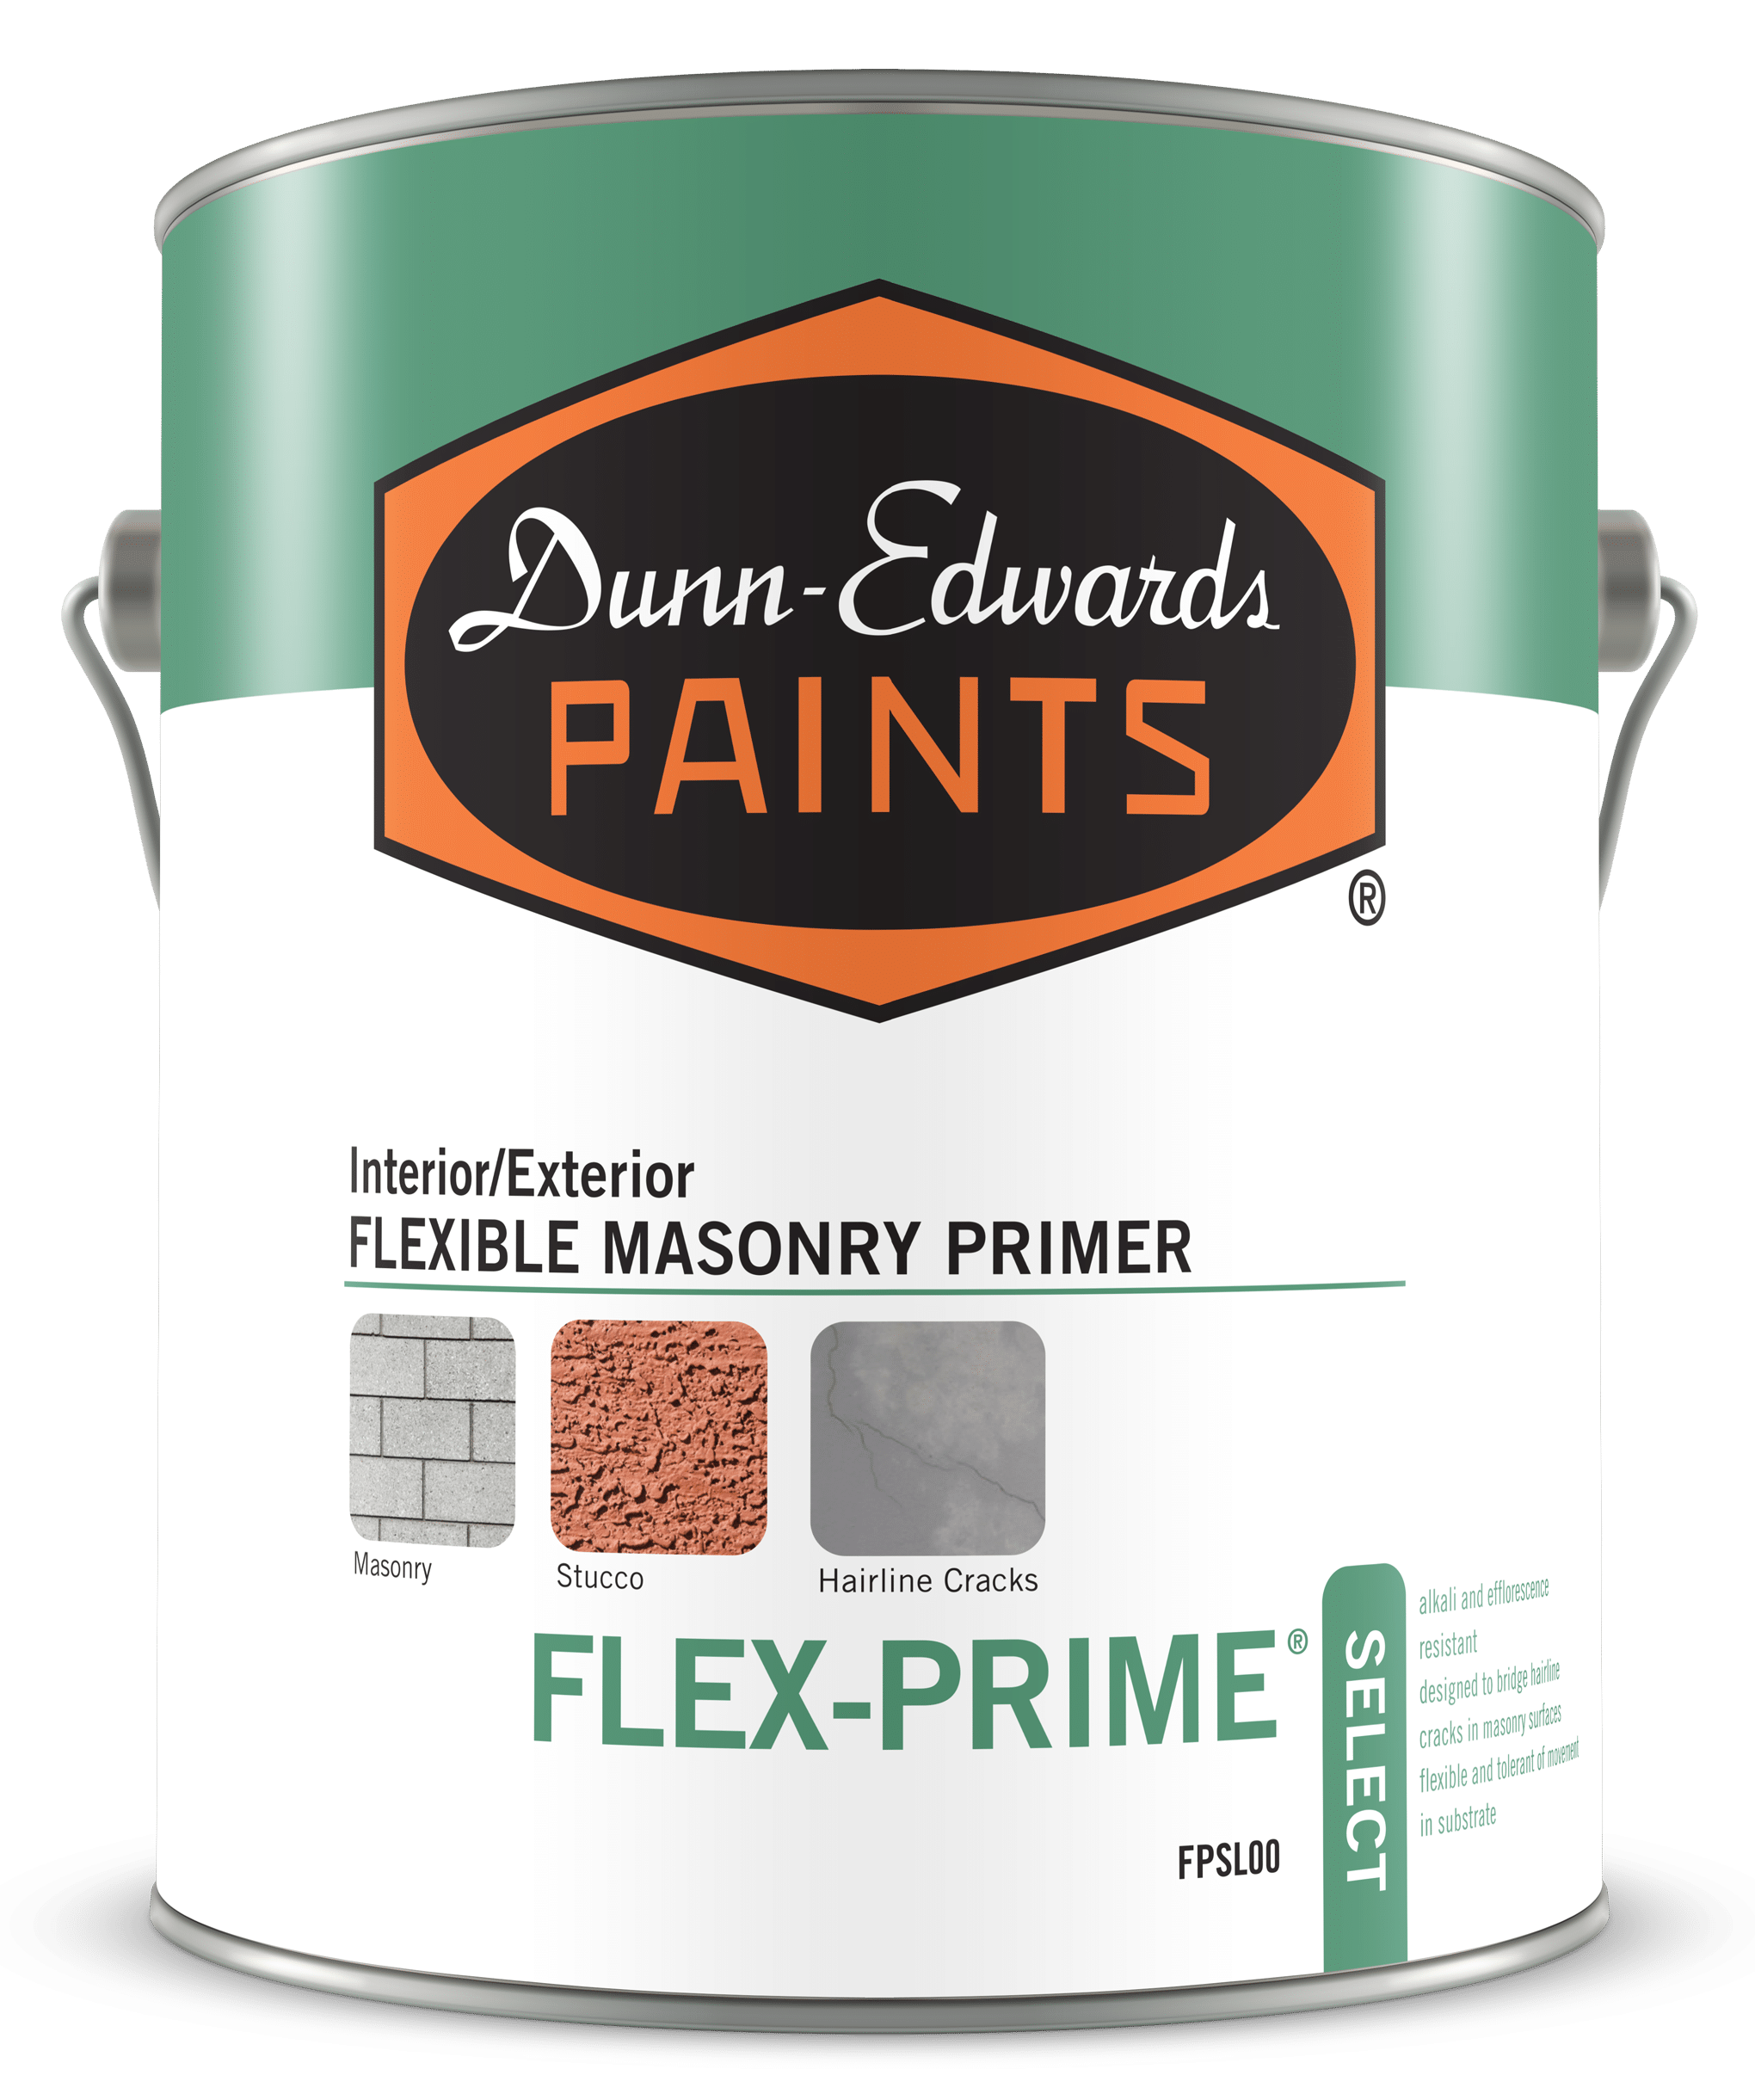 FLEX-PRIME Select Interior/Exterior Flexible Masonry Primer Can